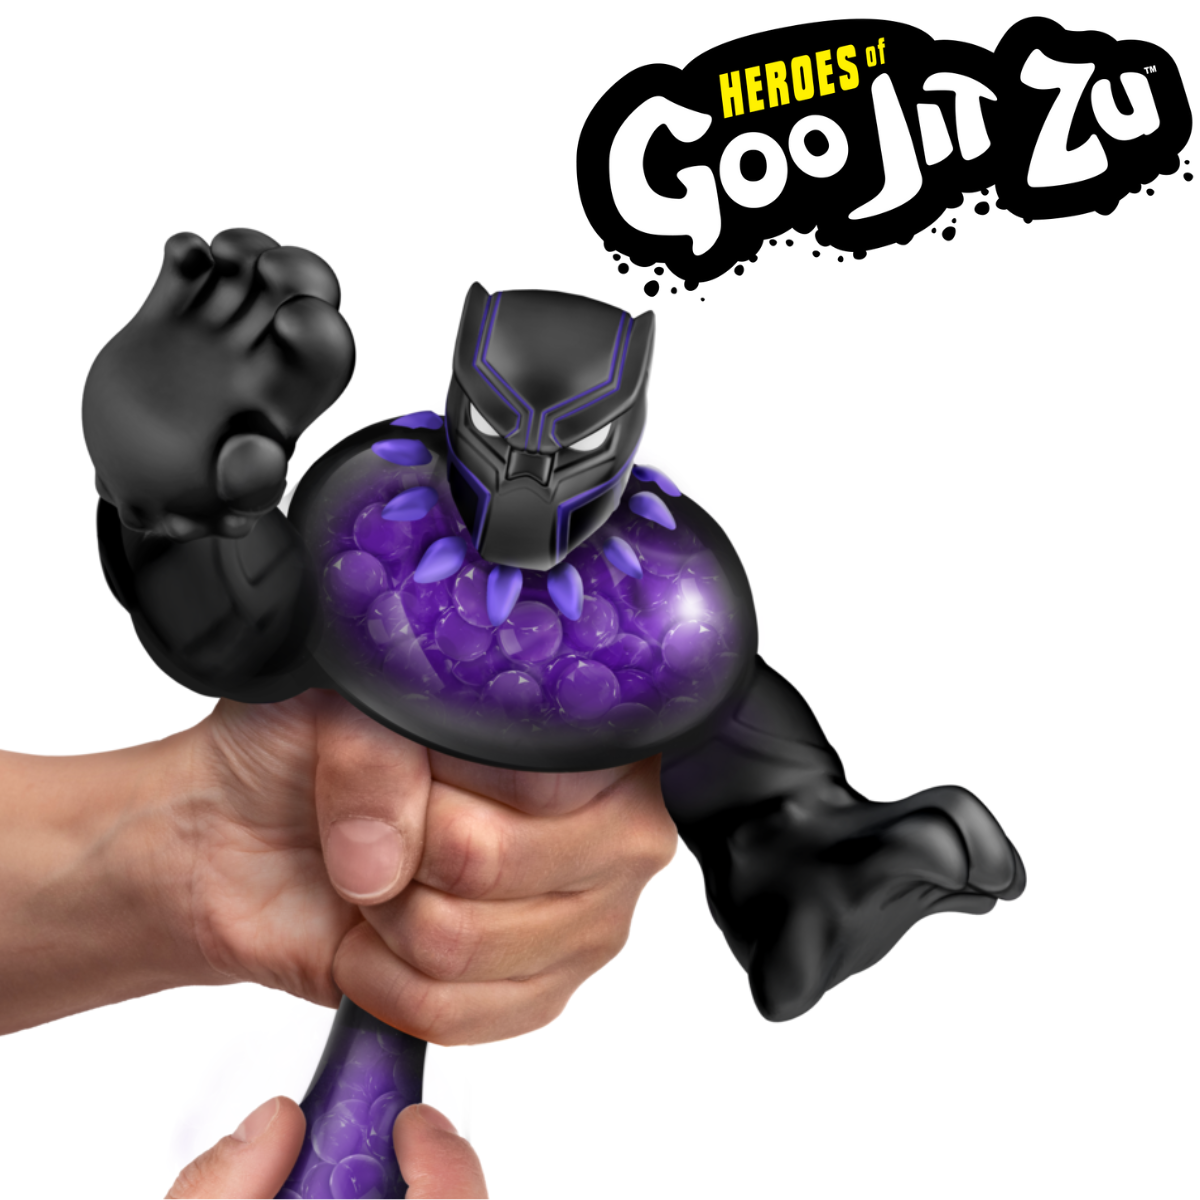 NEW! Heroes of Goo Jit Zu Marvel Hero Packs